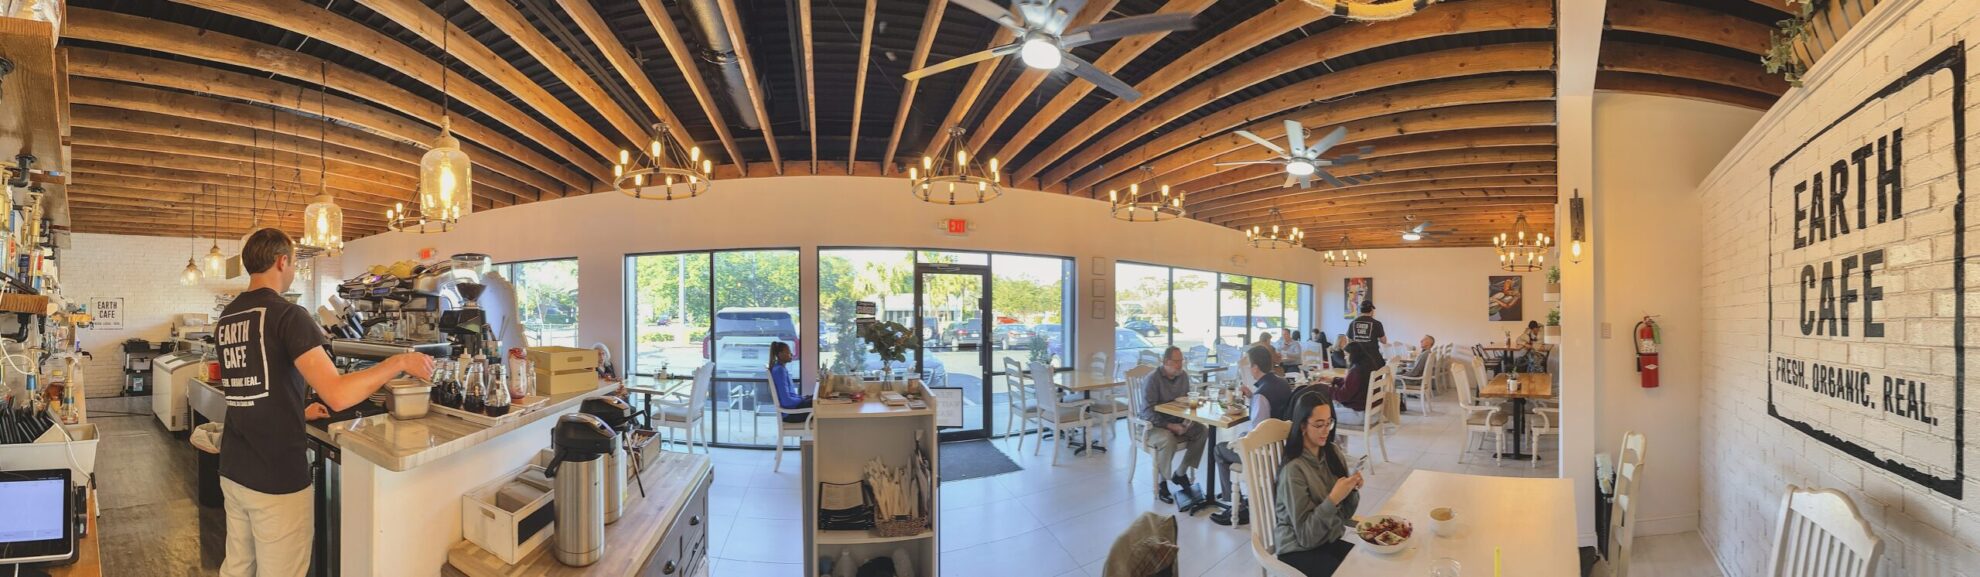 Inside look of Earth Cafe in Myrtle Beach, SC